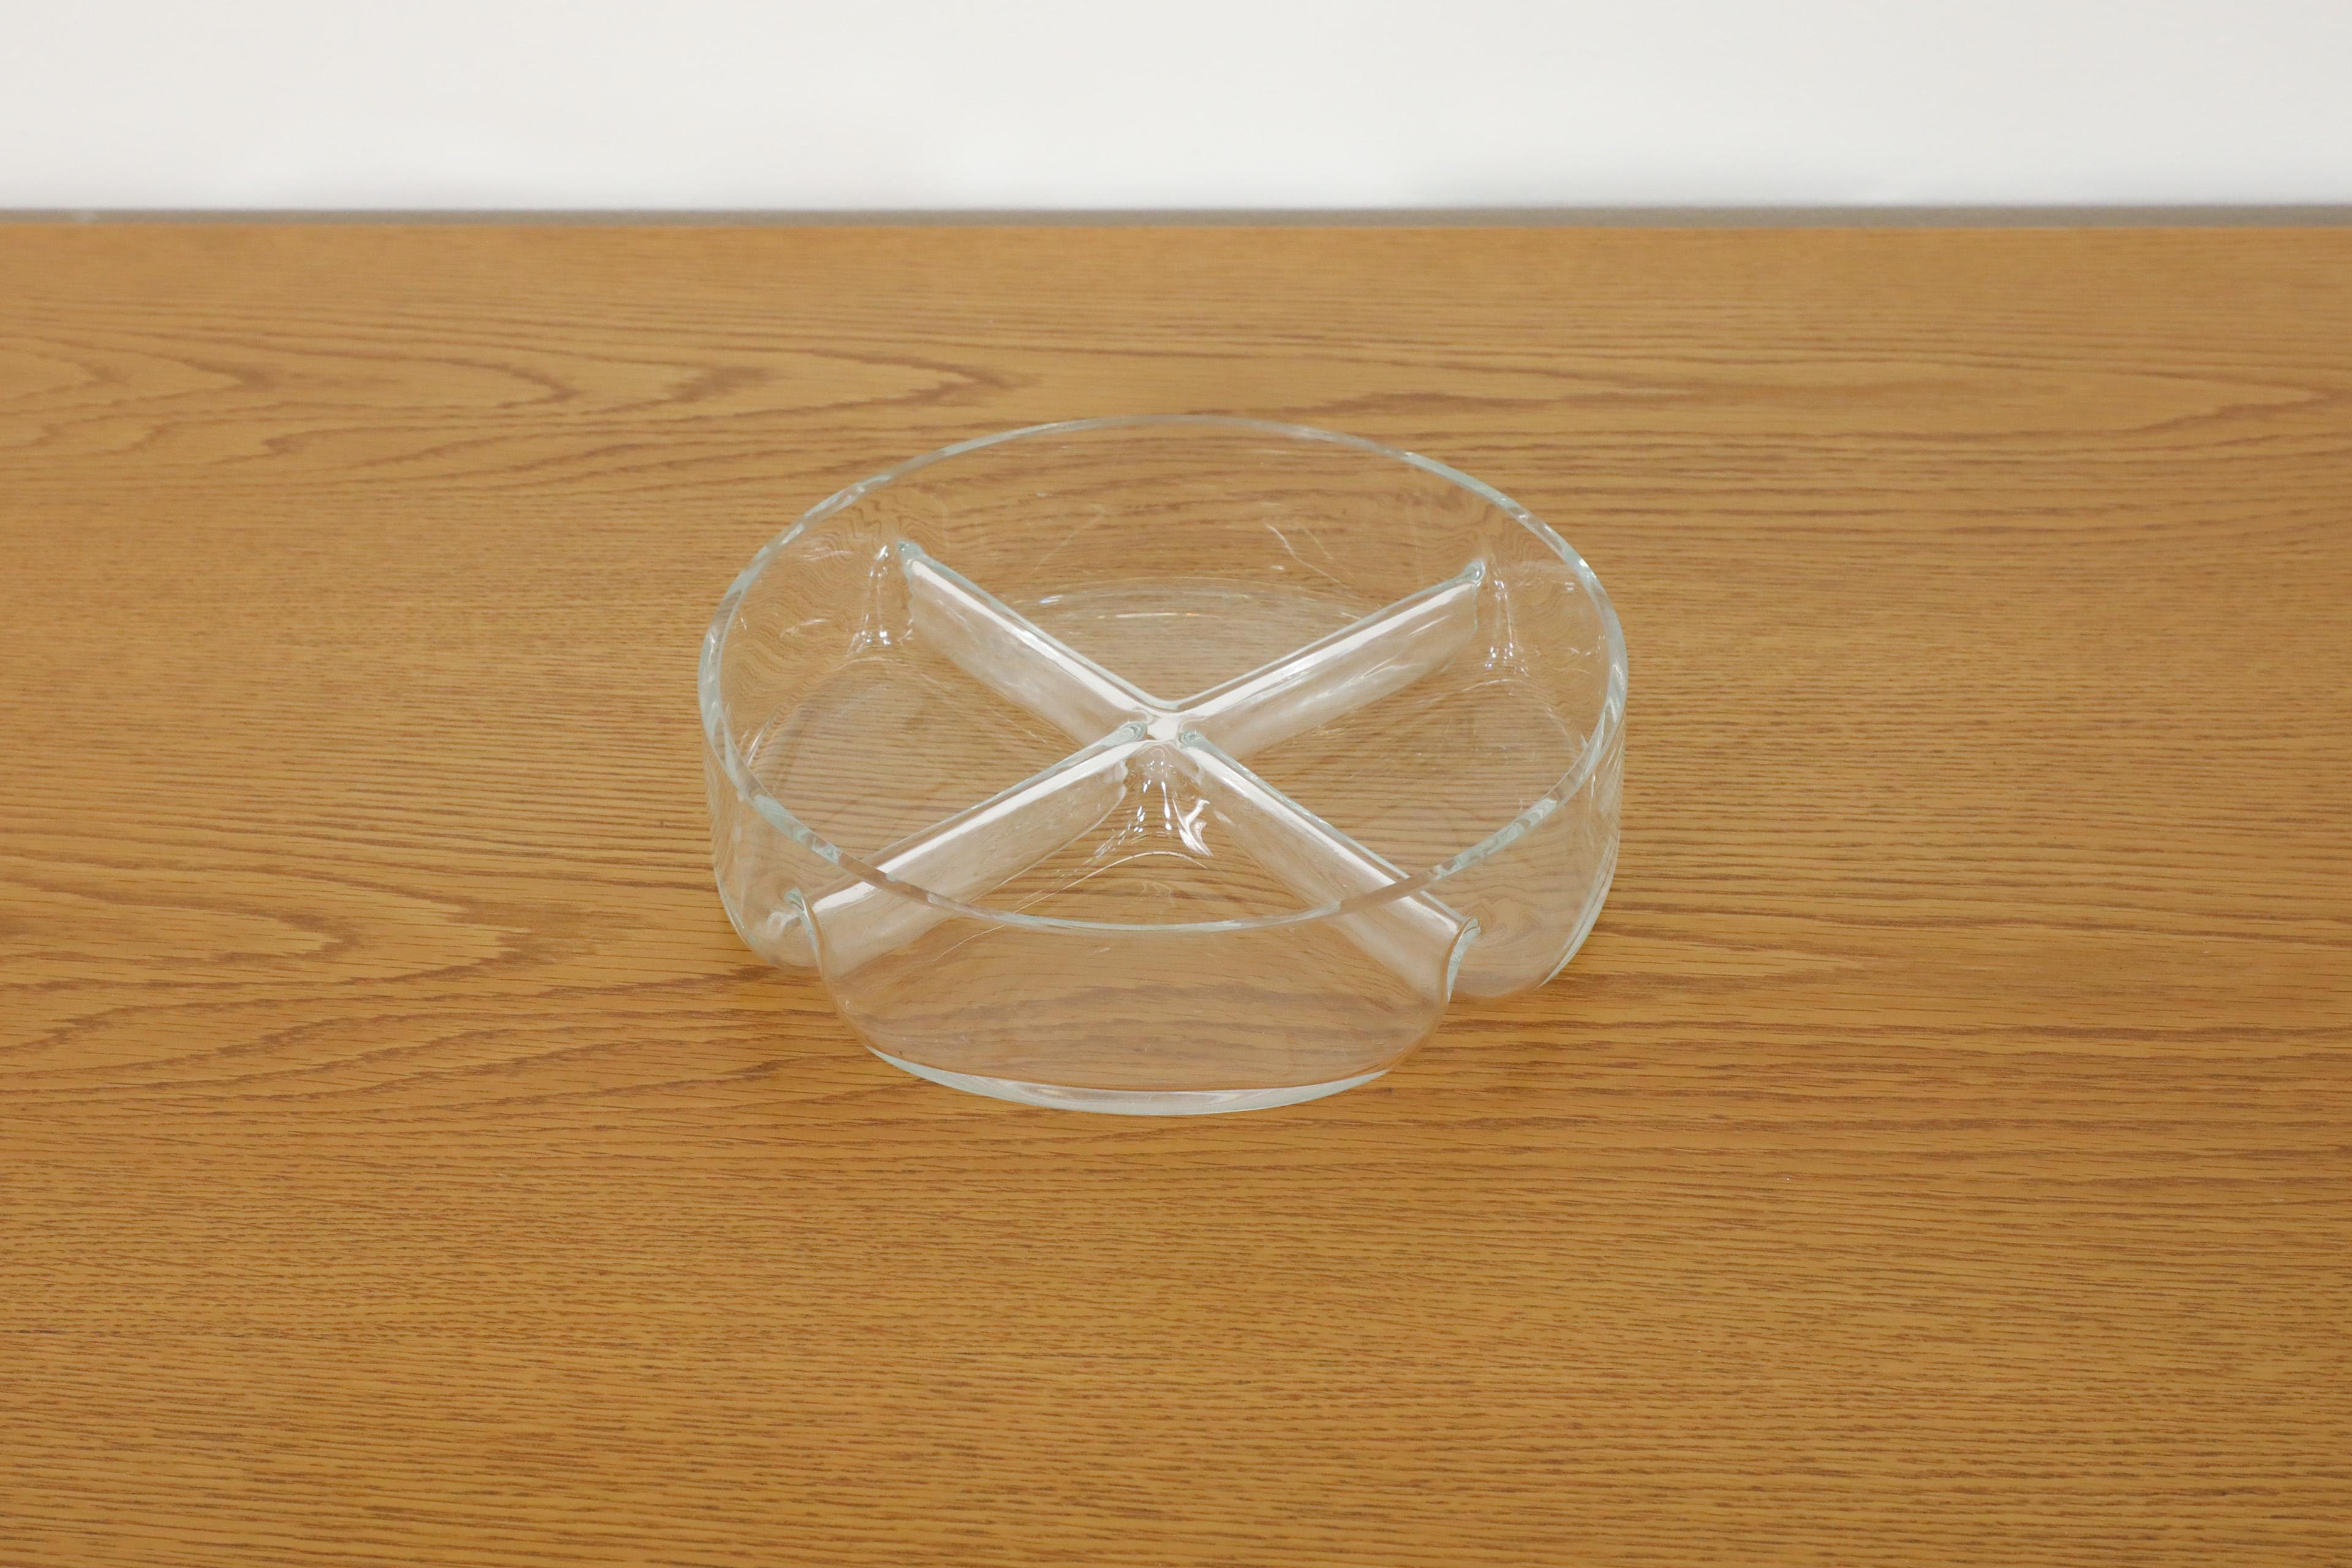 Dänische mundgeblasene Gewürzschale aus Glas mit vier Abschnitten. Im Originalzustand mit sichtbaren Kratzern. Die Abnutzung entspricht dem Alter und dem Gebrauch.